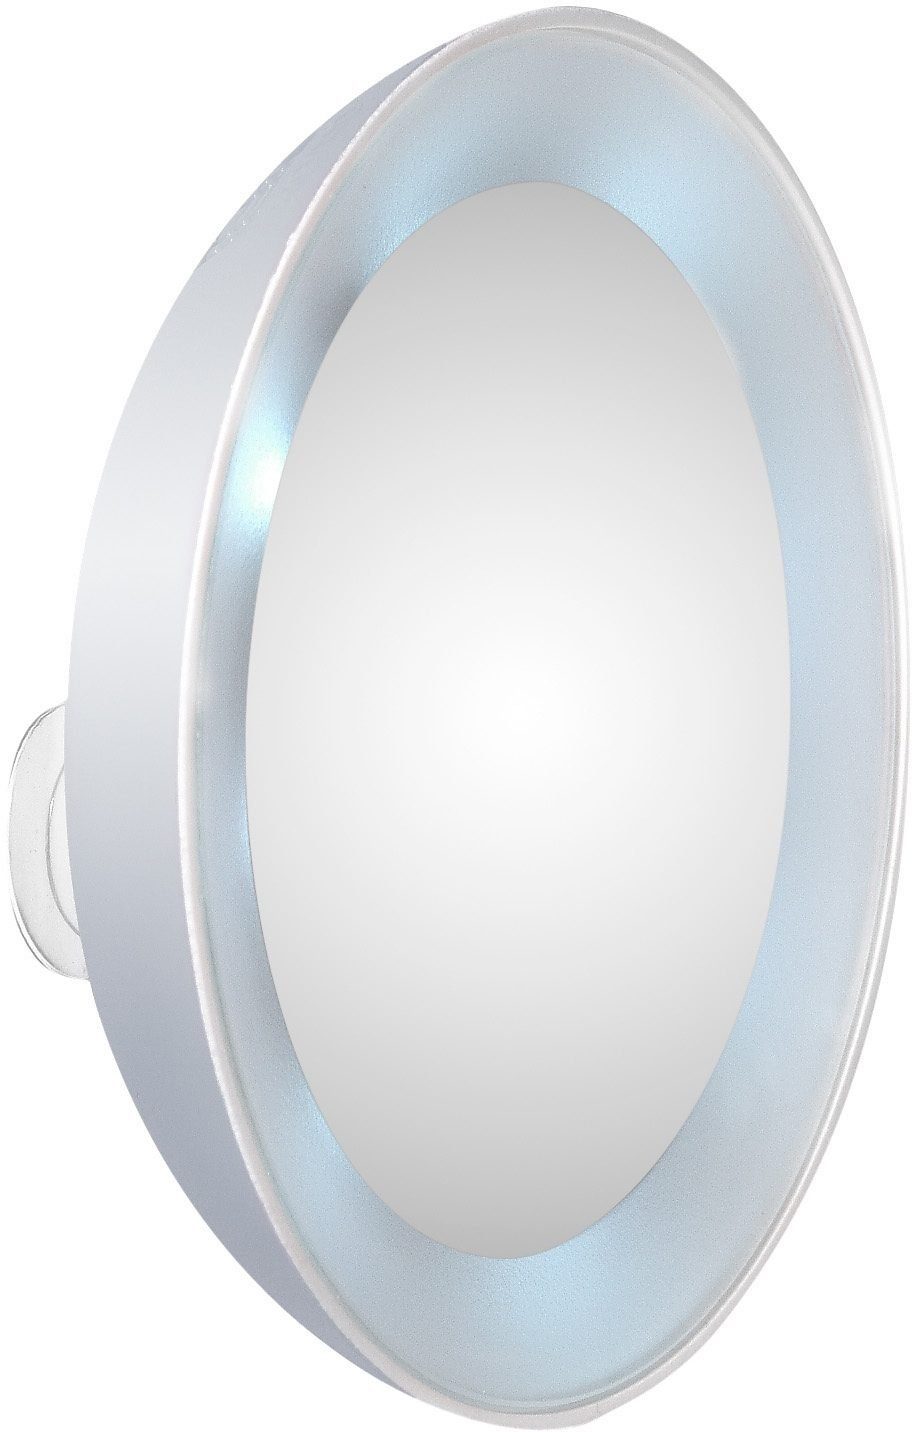 TWEEZERMAN Kosmetikspiegel, 15-fach Vergrößerung mit LED-Beleuchtung, Schminkspiegel